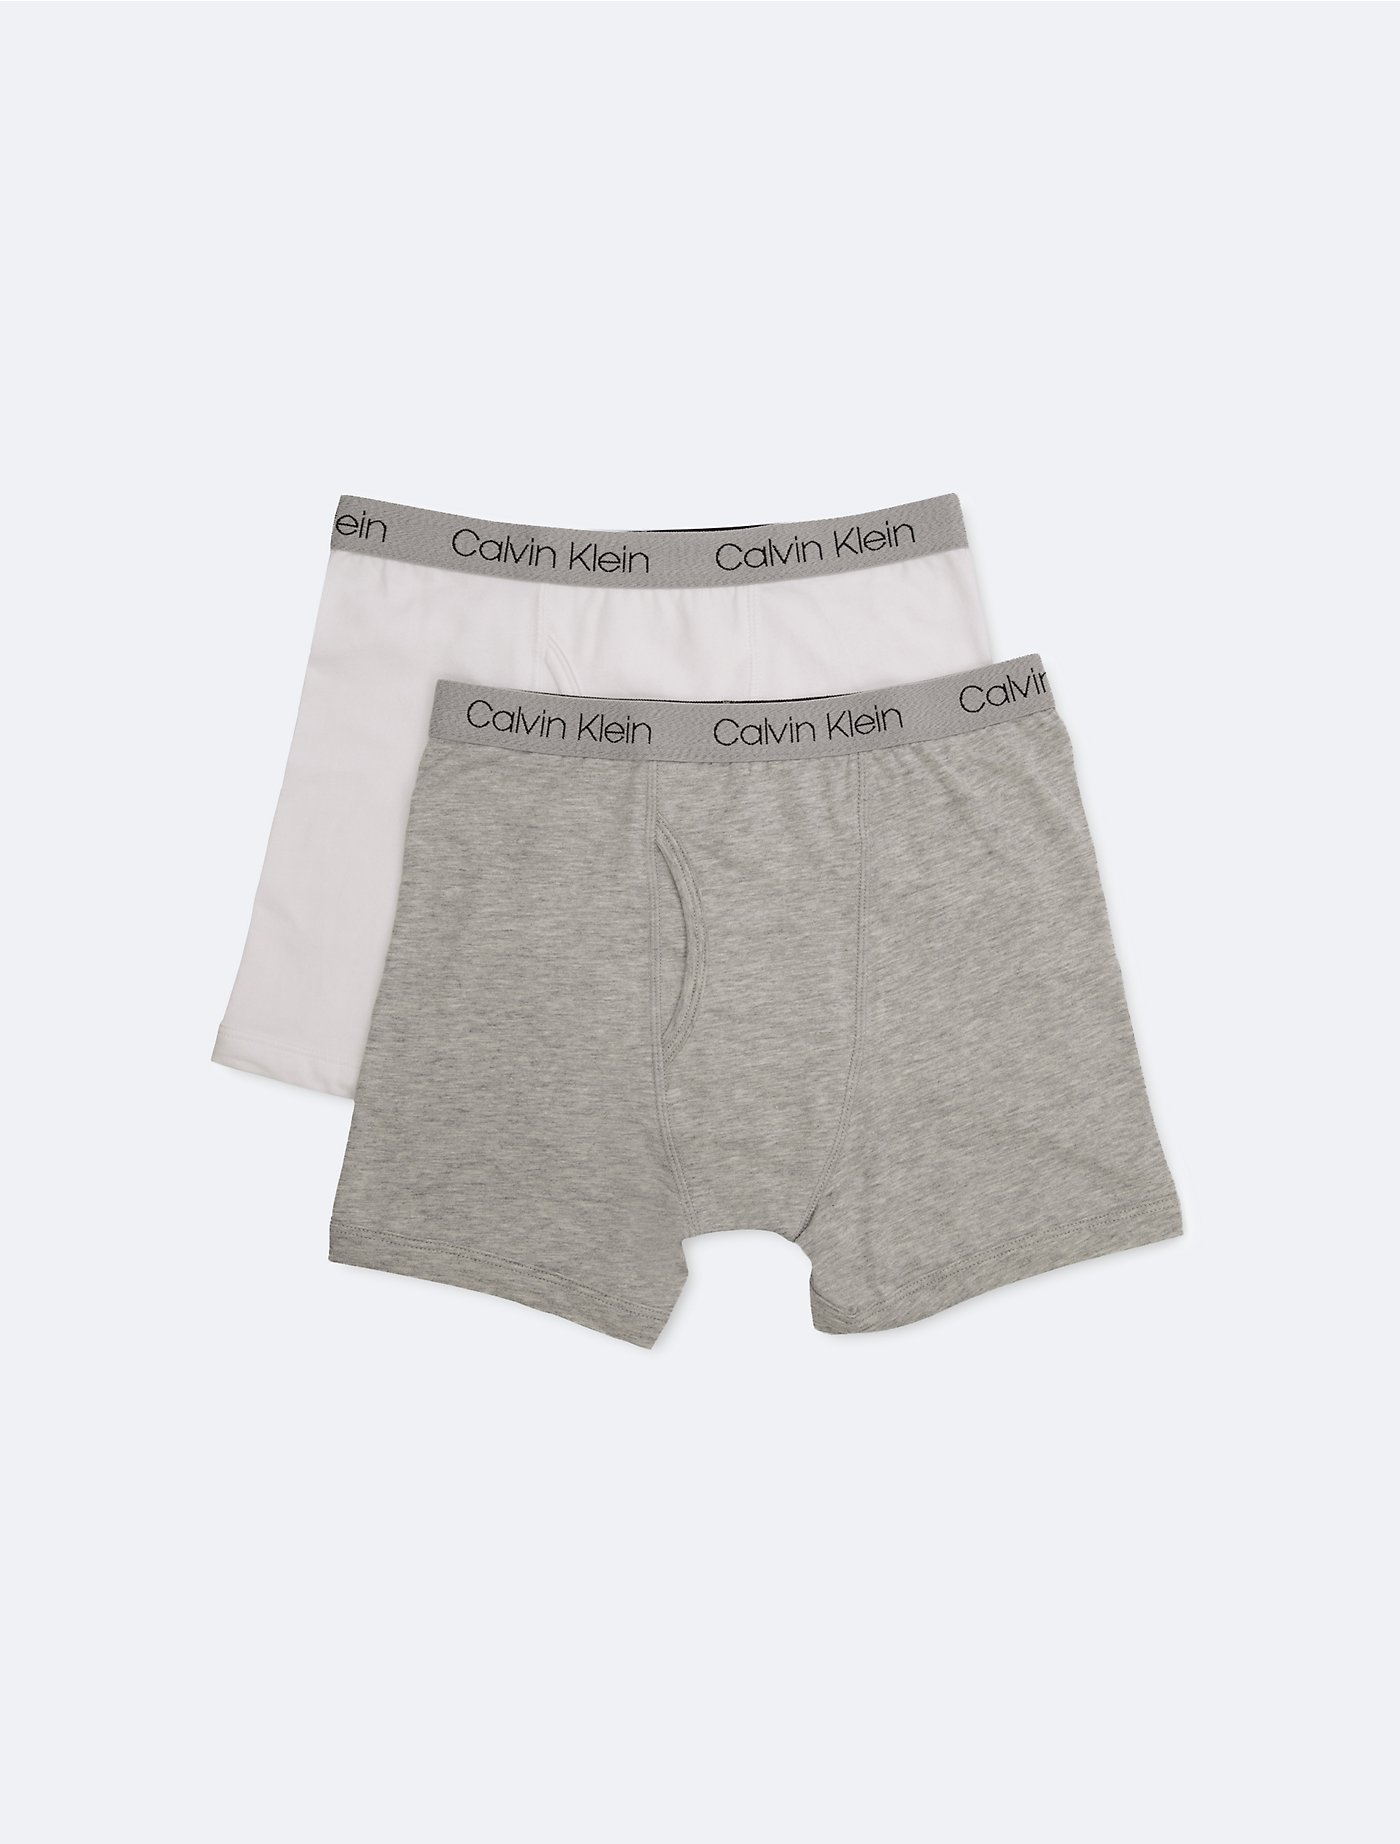 Calvin Klein Boys Underwear Kids Wear Stylicy 